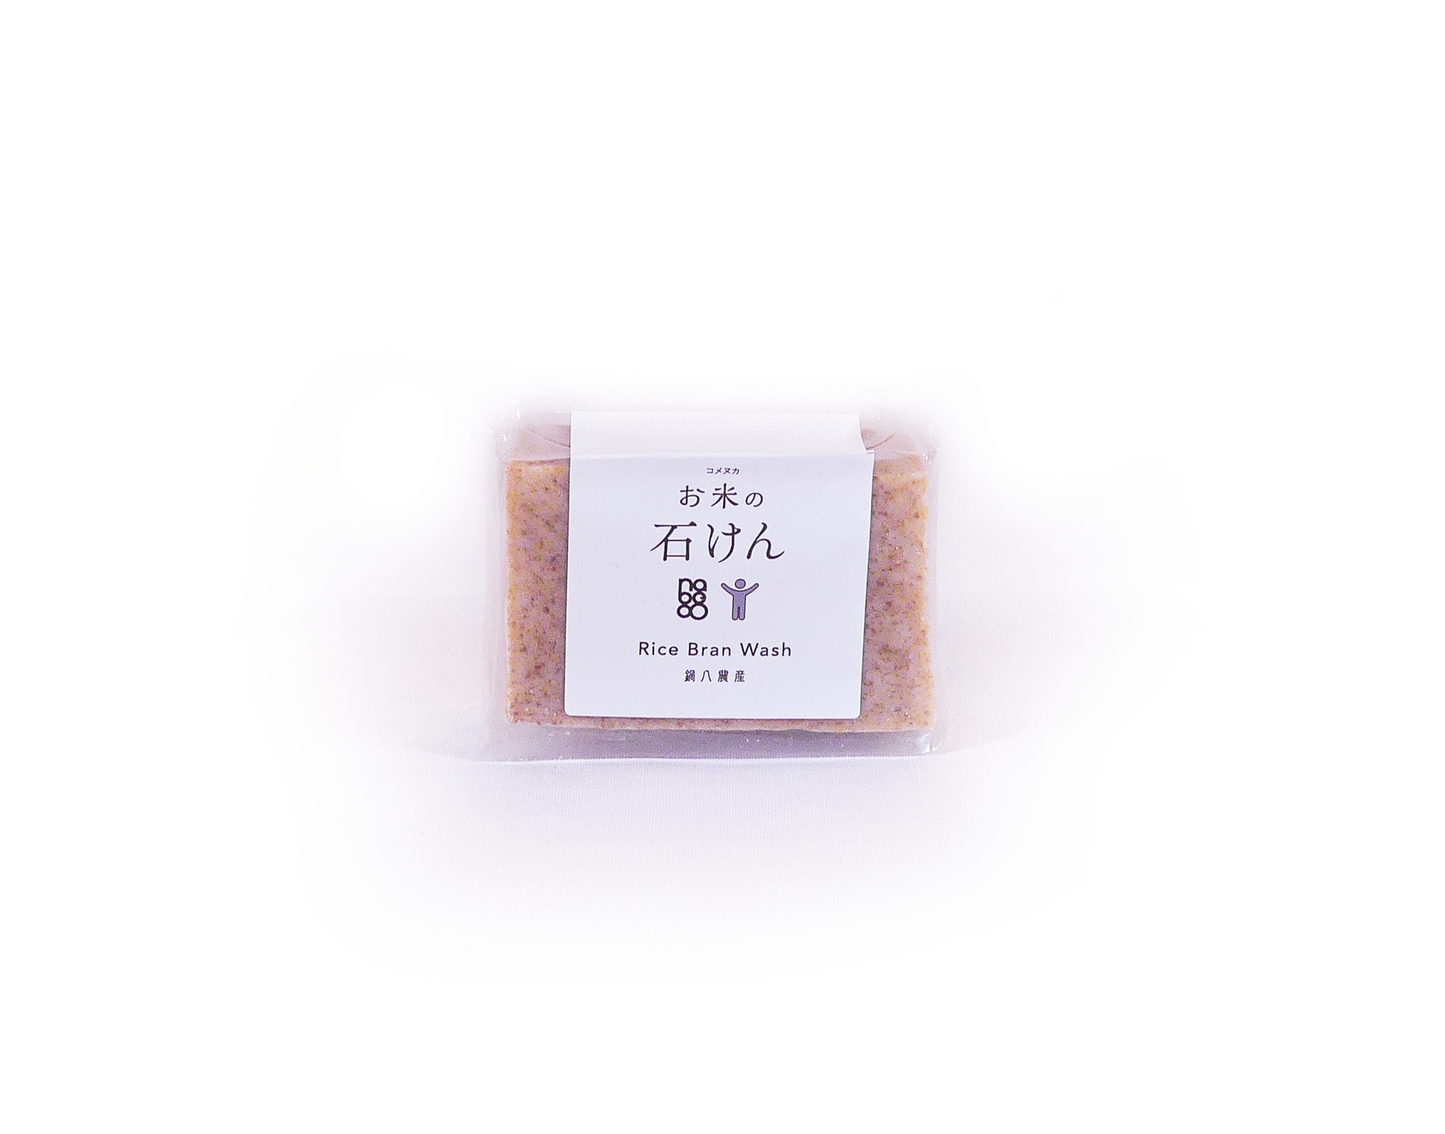 Rice bran bar soap